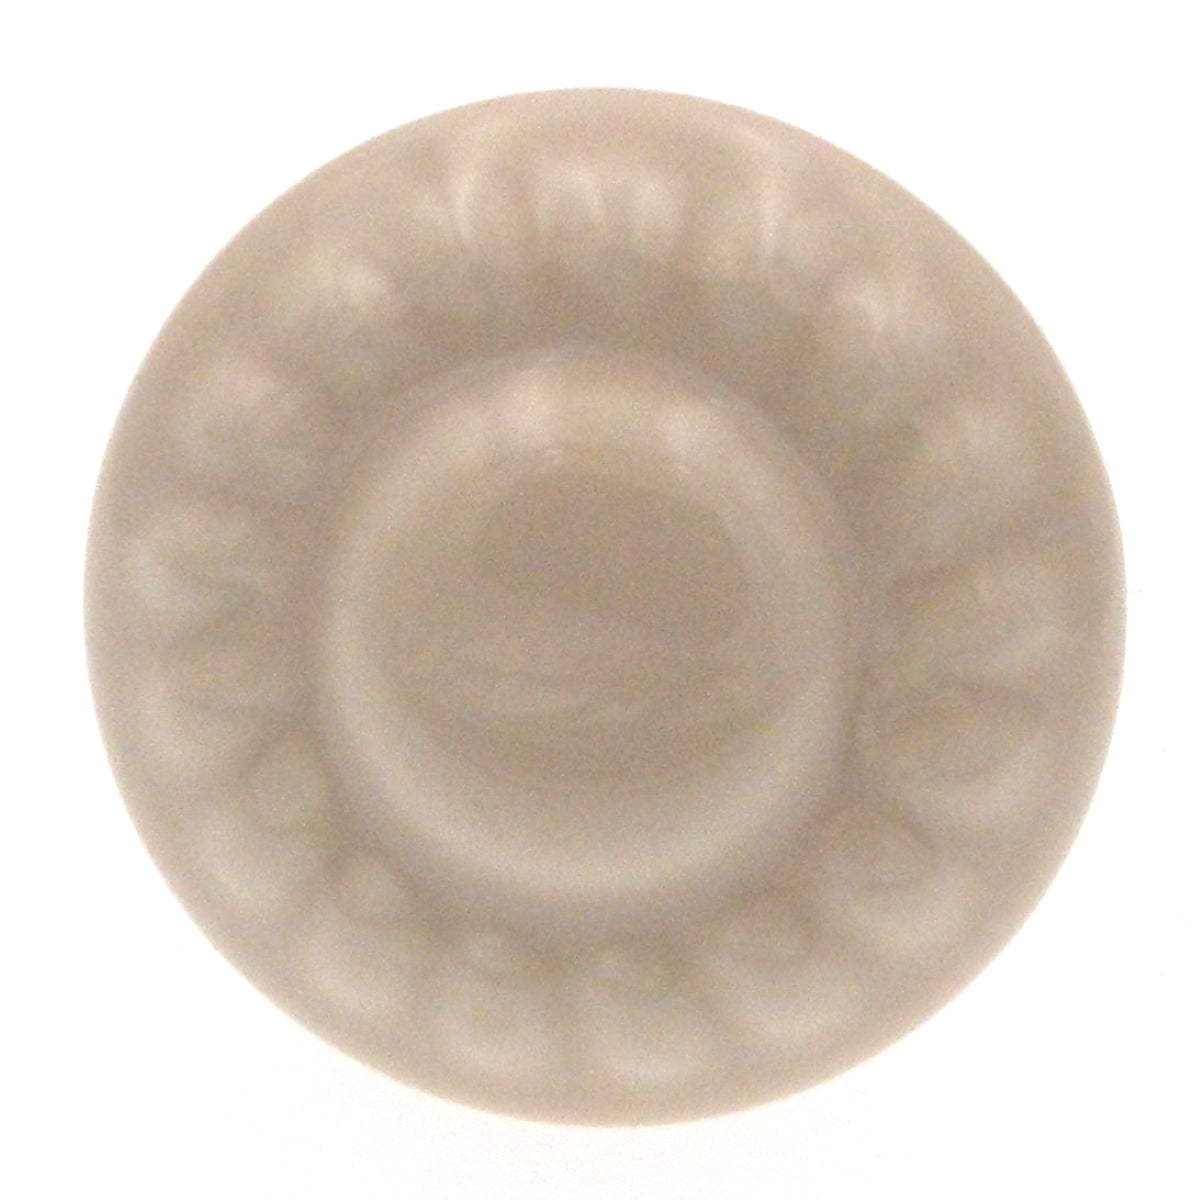 Paquete de 2 perillas para gabinete Amerock BP1321-A de cerámica lavada color almendra de 1 3/8 "